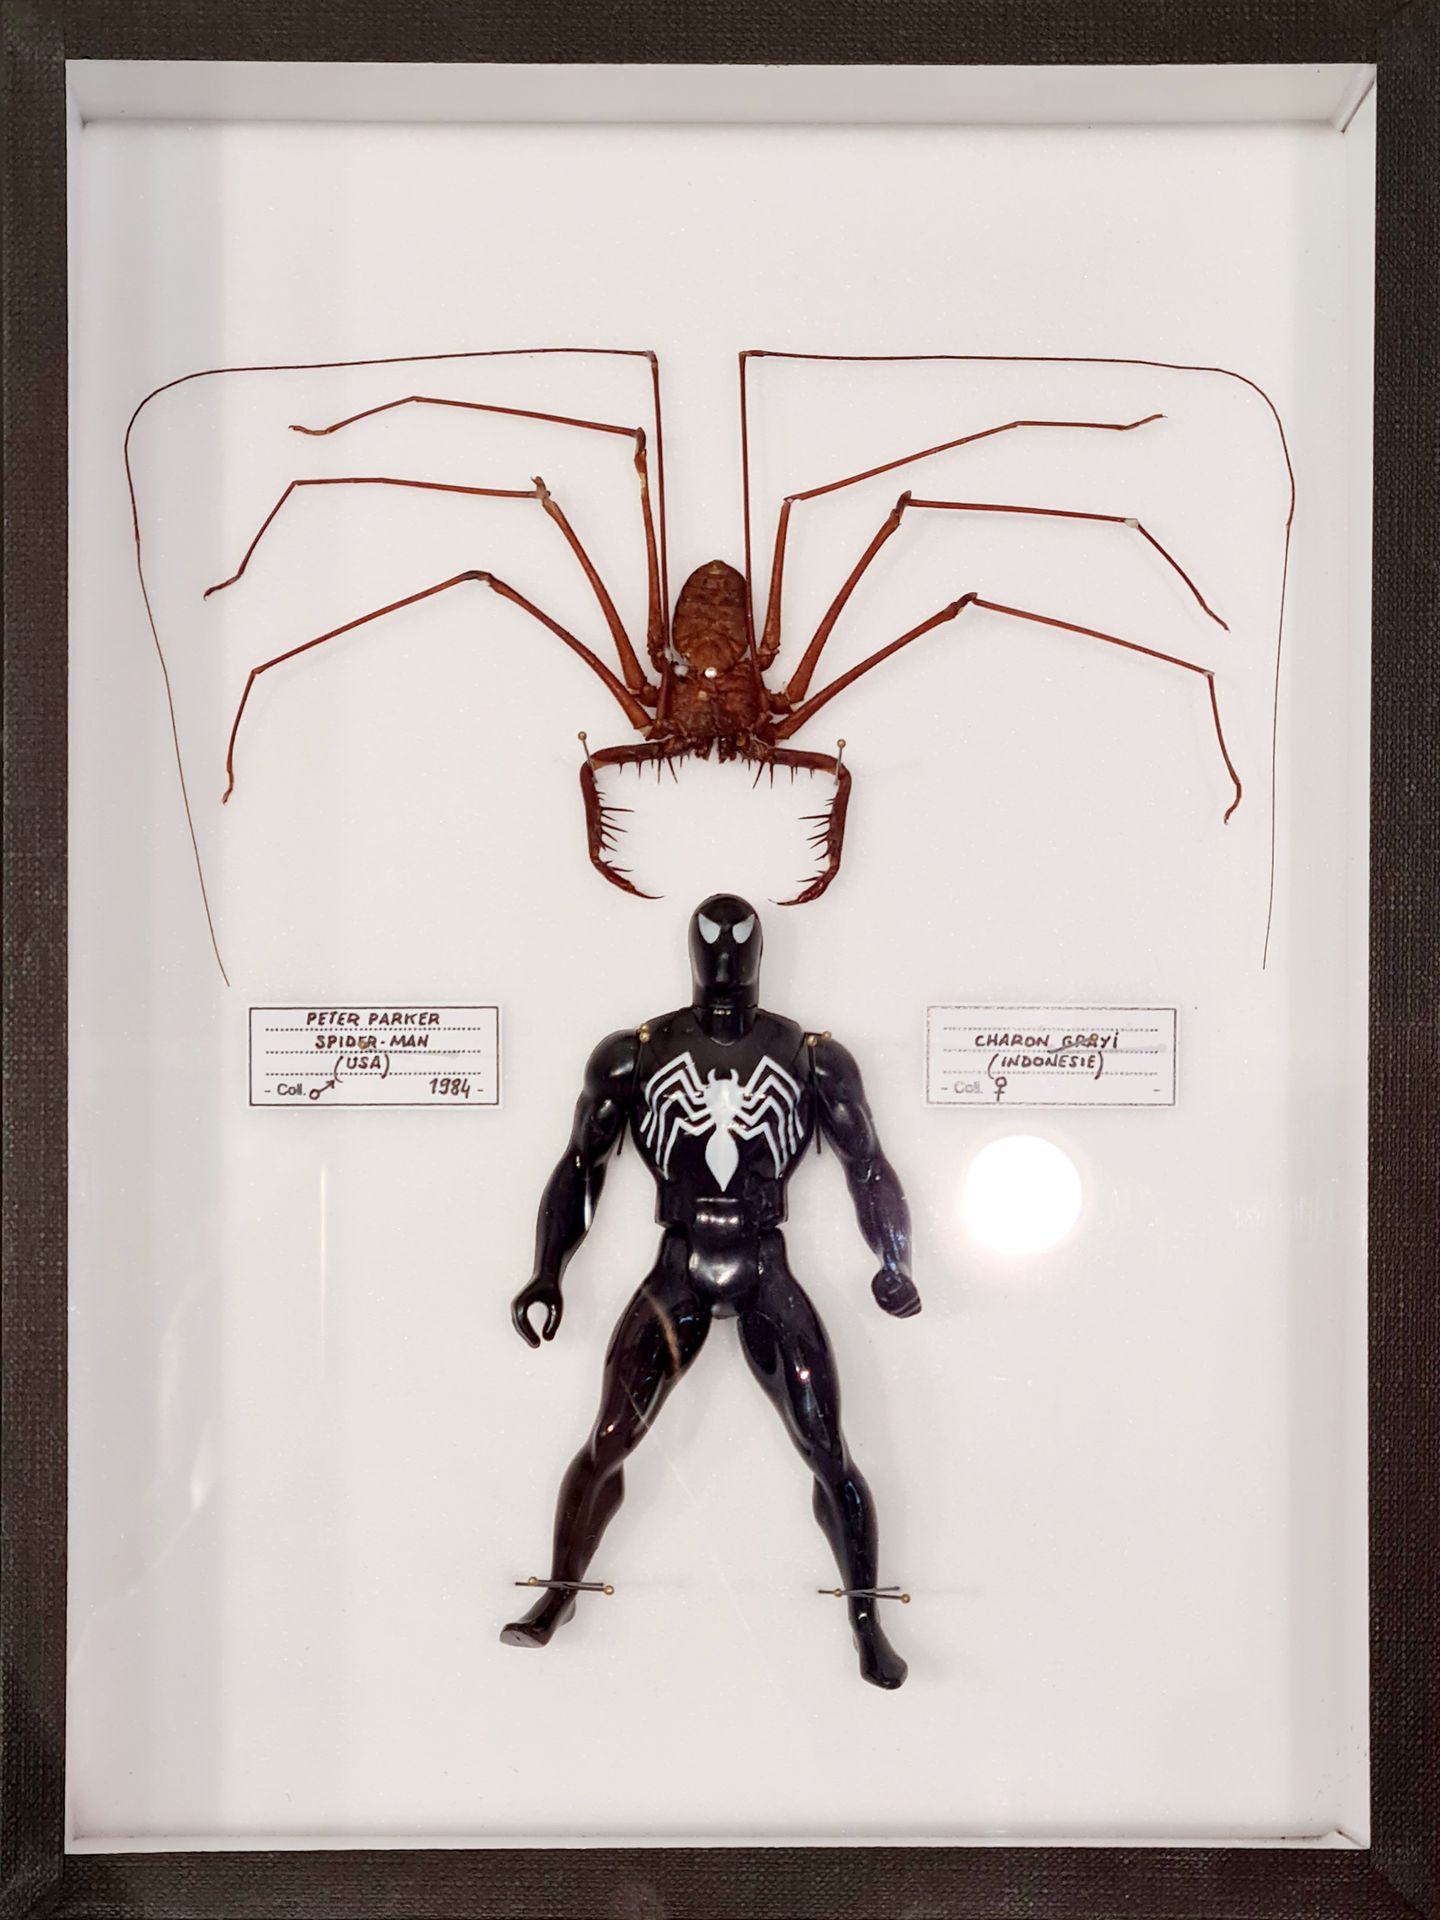 B. Pietri B. Pietri - Spiderman

Araña real y figurita de época clavadas en una &hellip;